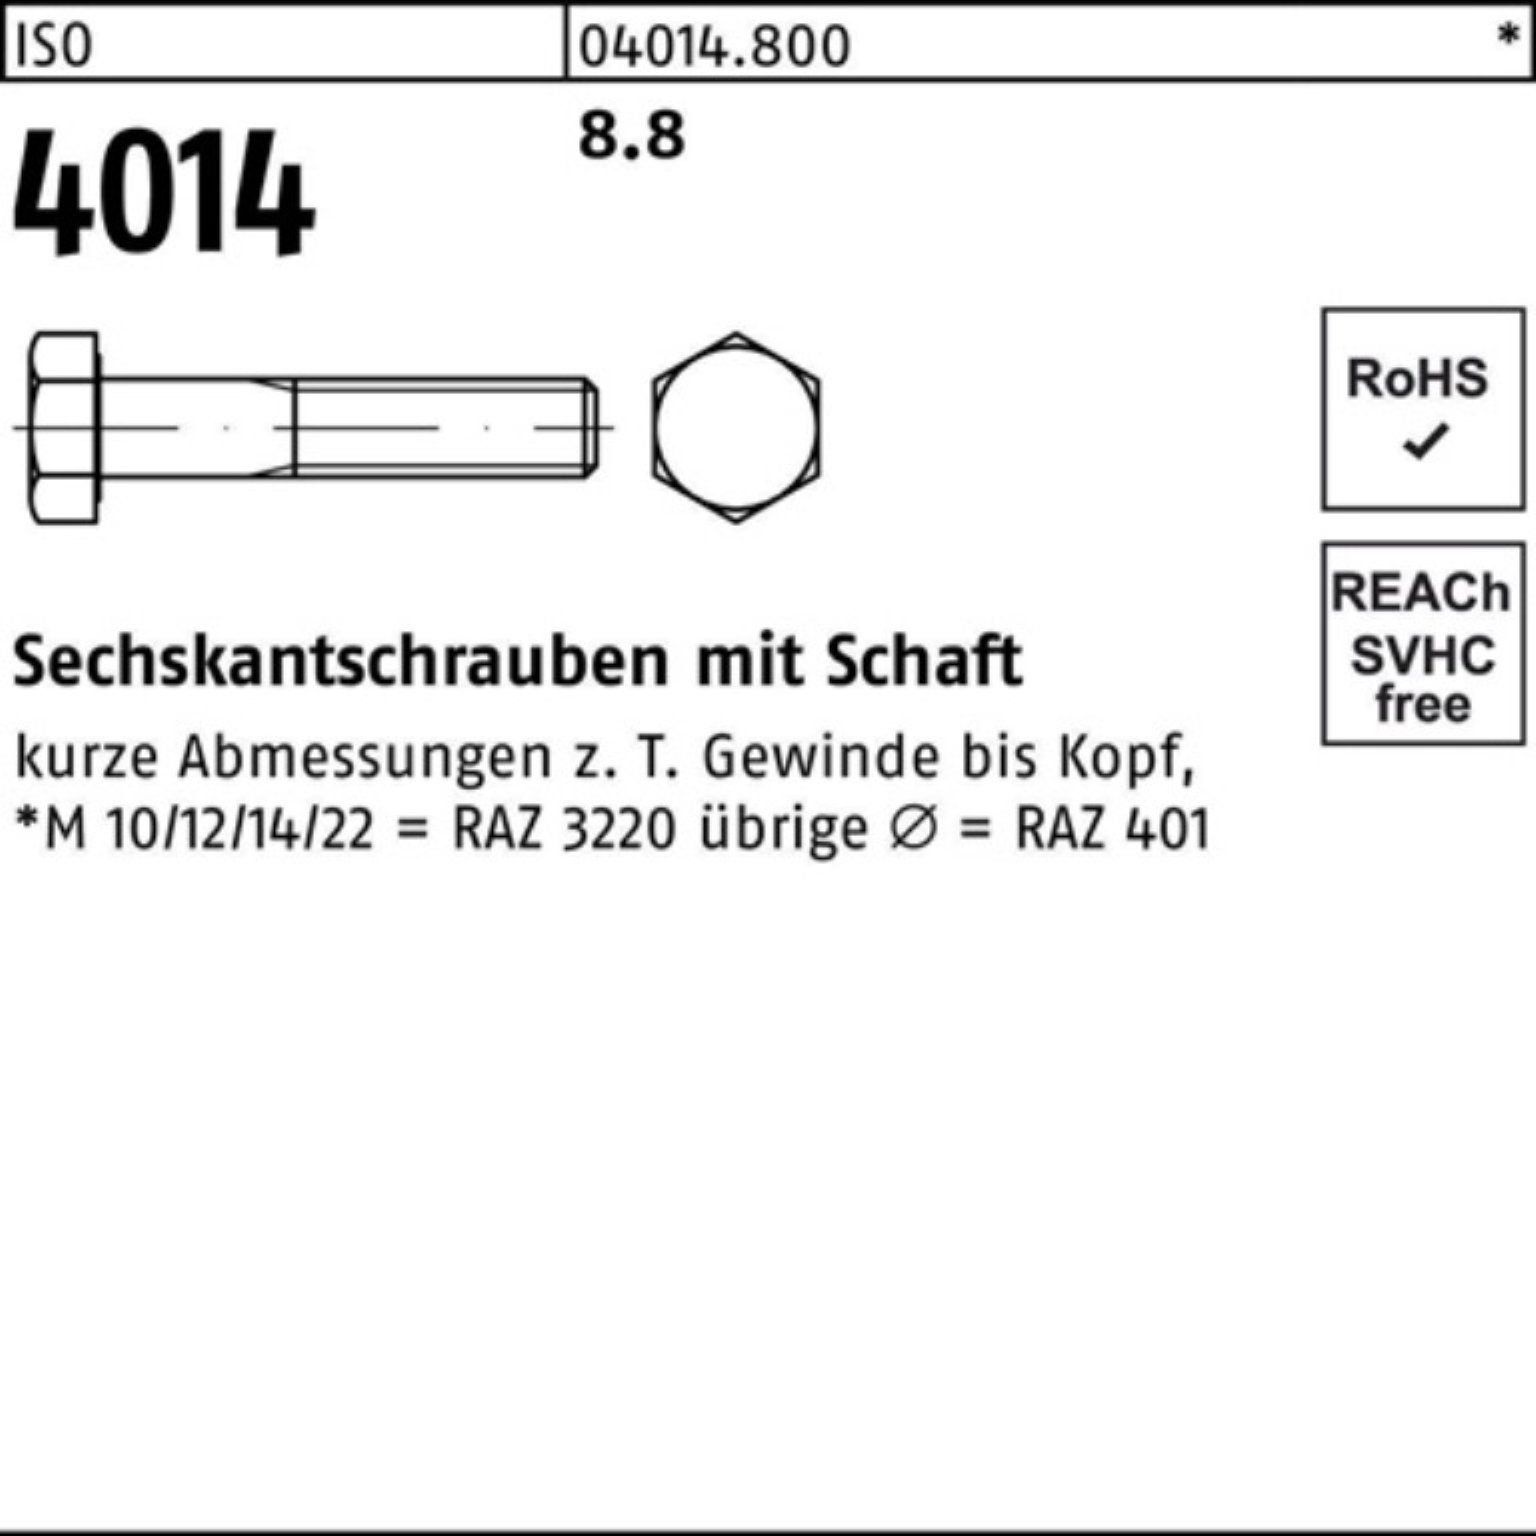 Sechskantschraube Stück 110 Pack 8.8 25 Bufab Schaft 100er Sechskantschraube 4014 ISO IS M20x